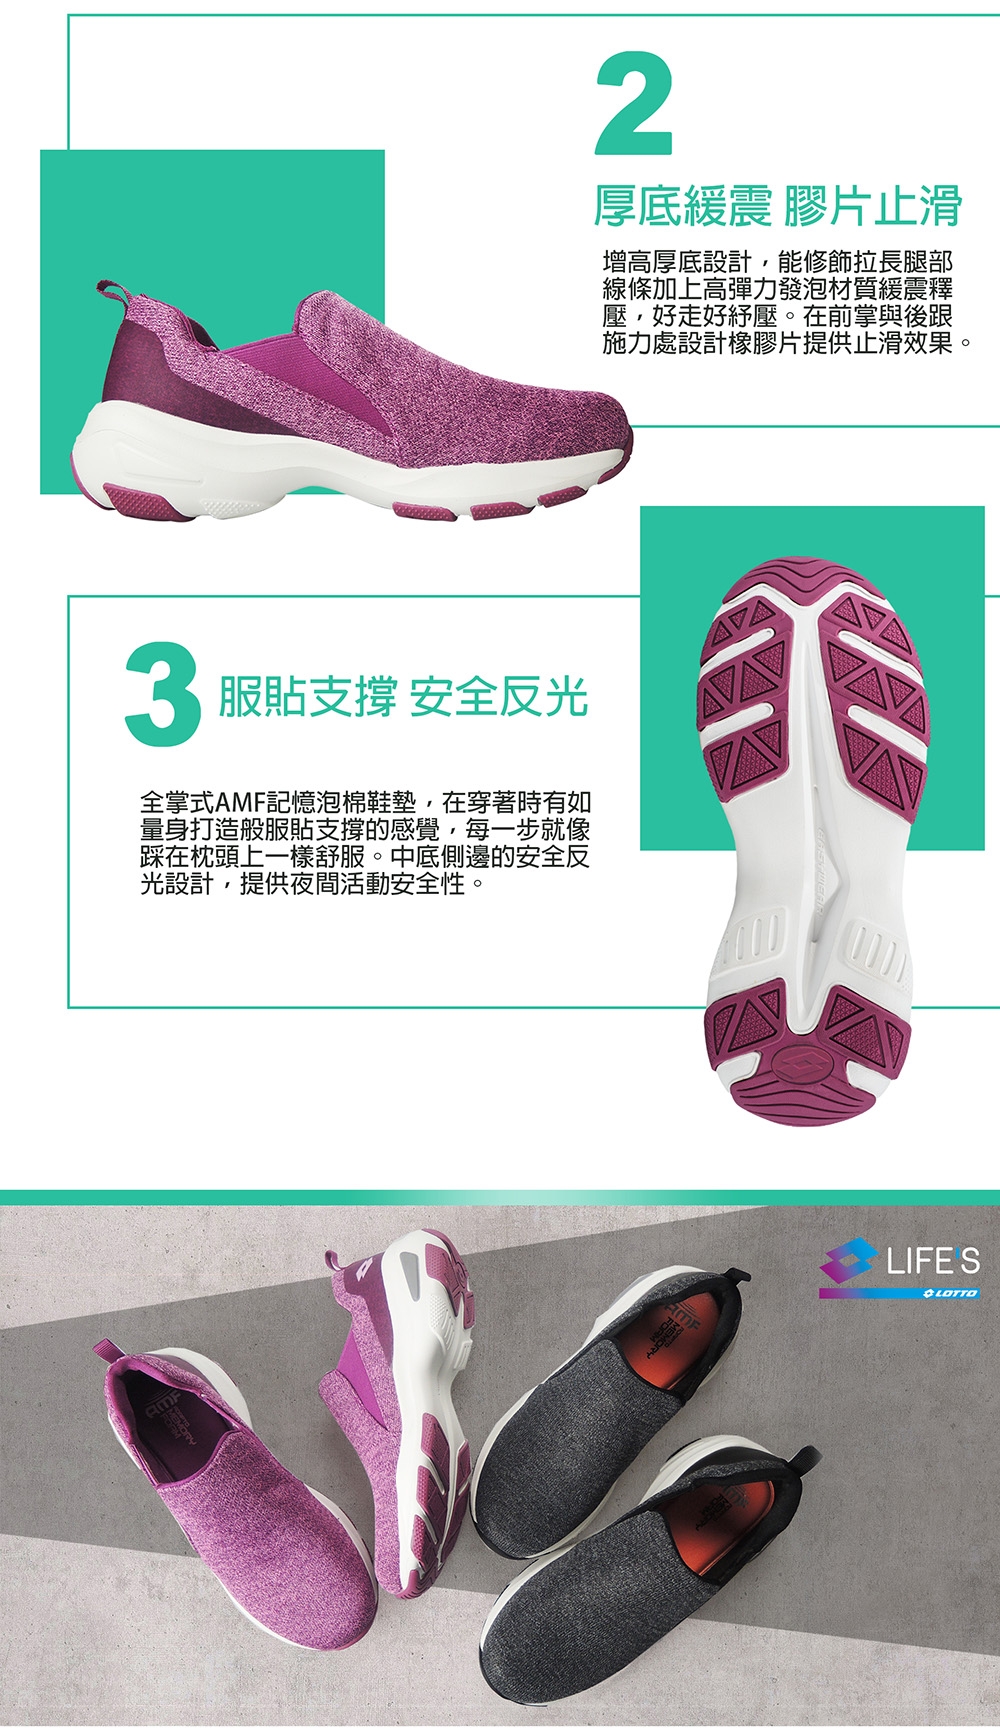 LOTTO 義大利 女 EASY WEAR 厚底美型輕便鞋 (紫)